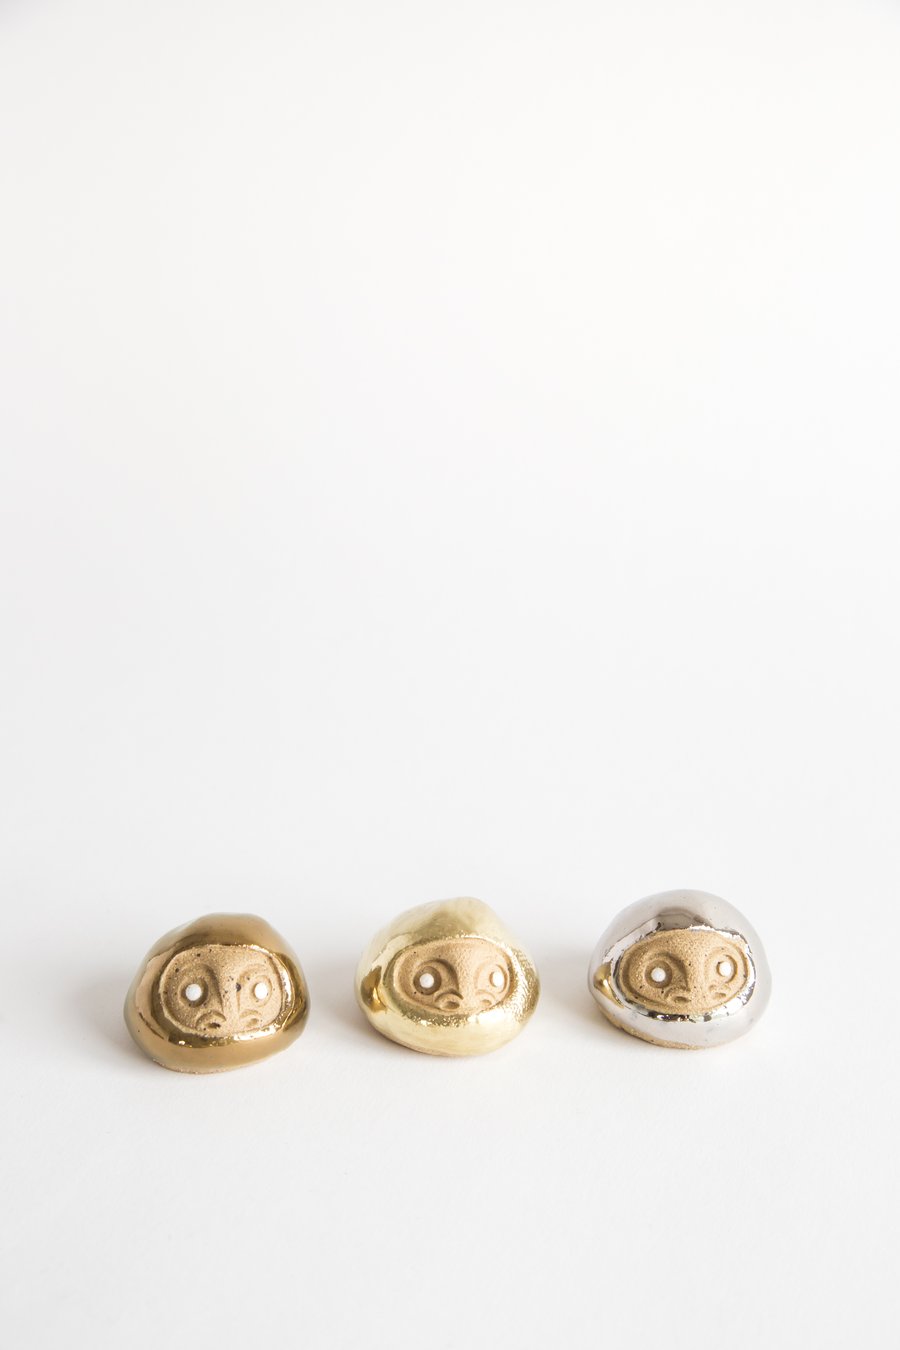 Image of Tiny Golden Daruma Wishing Dolls